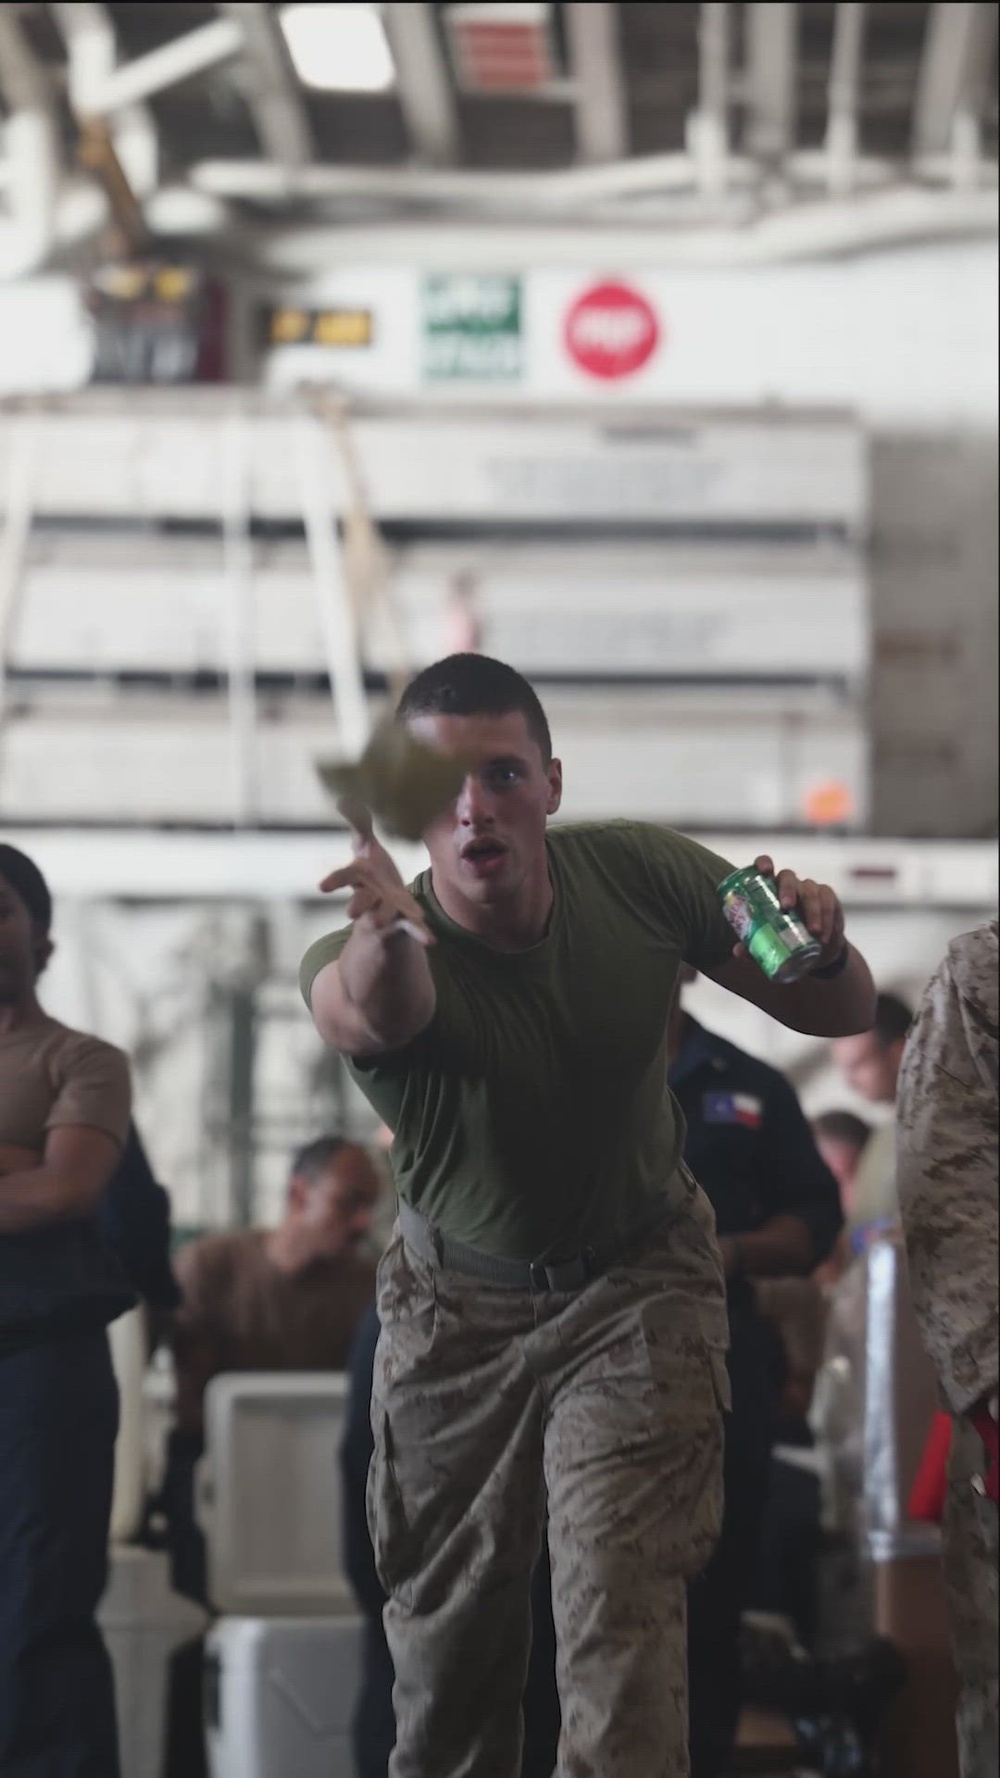 DVIDS - Video - USS Bataan Sailors and Marines Enjoy a Steel Beach